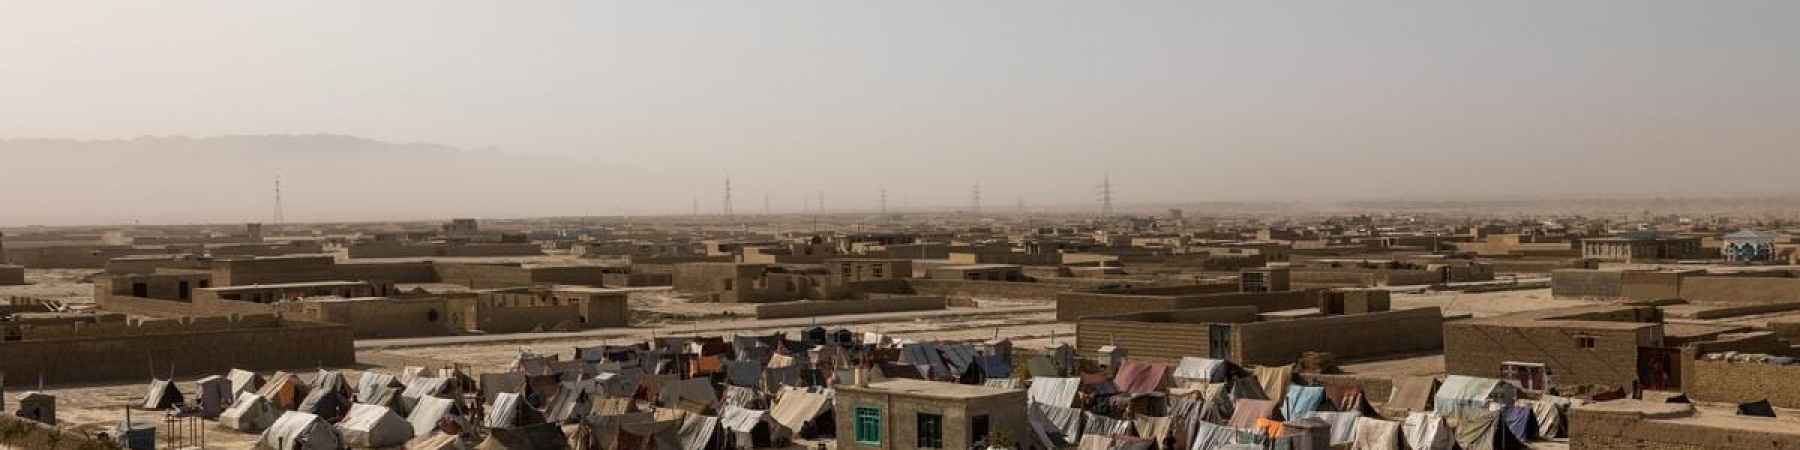 campo profughi ripreso dall'alto in Afghanistan